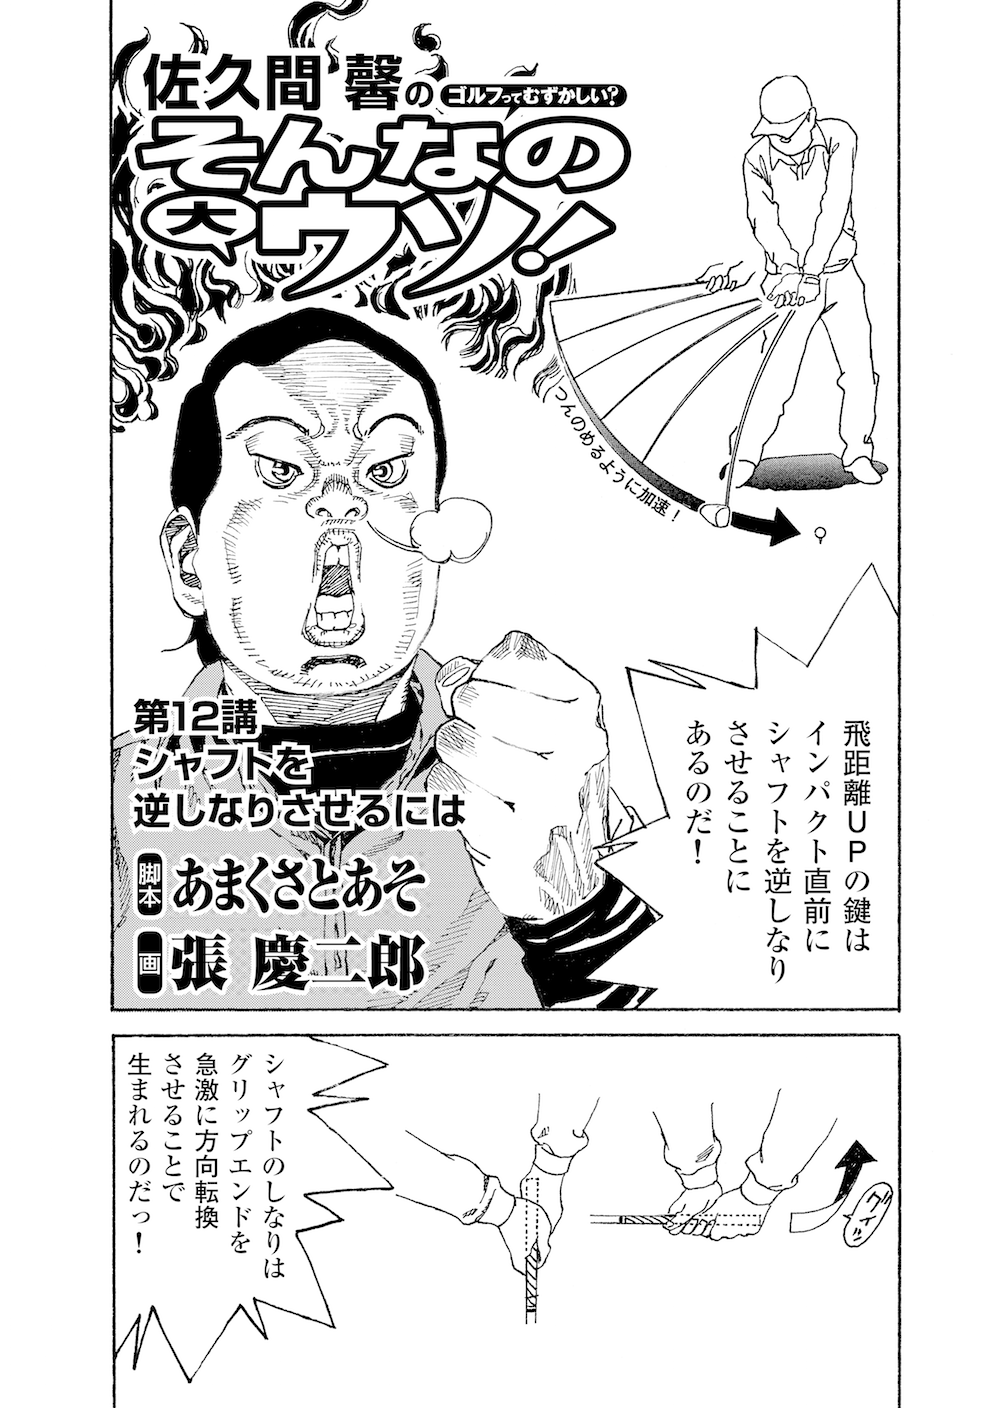 第12話 シャフトを逆しなりさせるには 無料で読めるゴルフレッスンコミックweb 日本文芸社